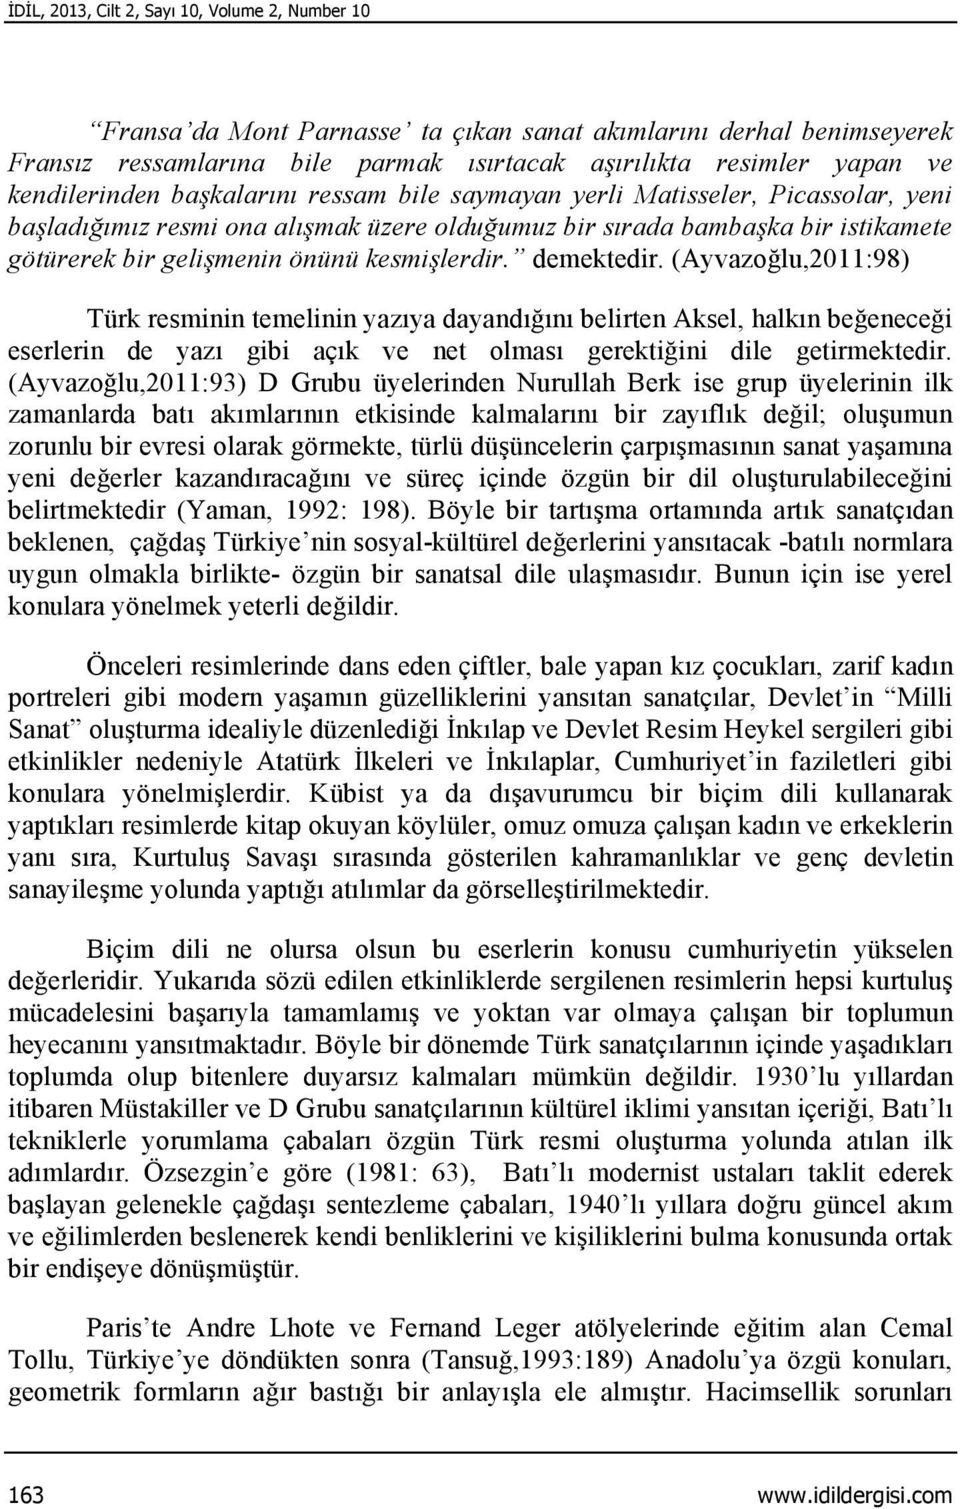 kesmişlerdir. demektedir. (Ayvazoğlu,2011:98) Türk resminin temelinin yazıya dayandığını belirten Aksel, halkın beğeneceği eserlerin de yazı gibi açık ve net olması gerektiğini dile getirmektedir.